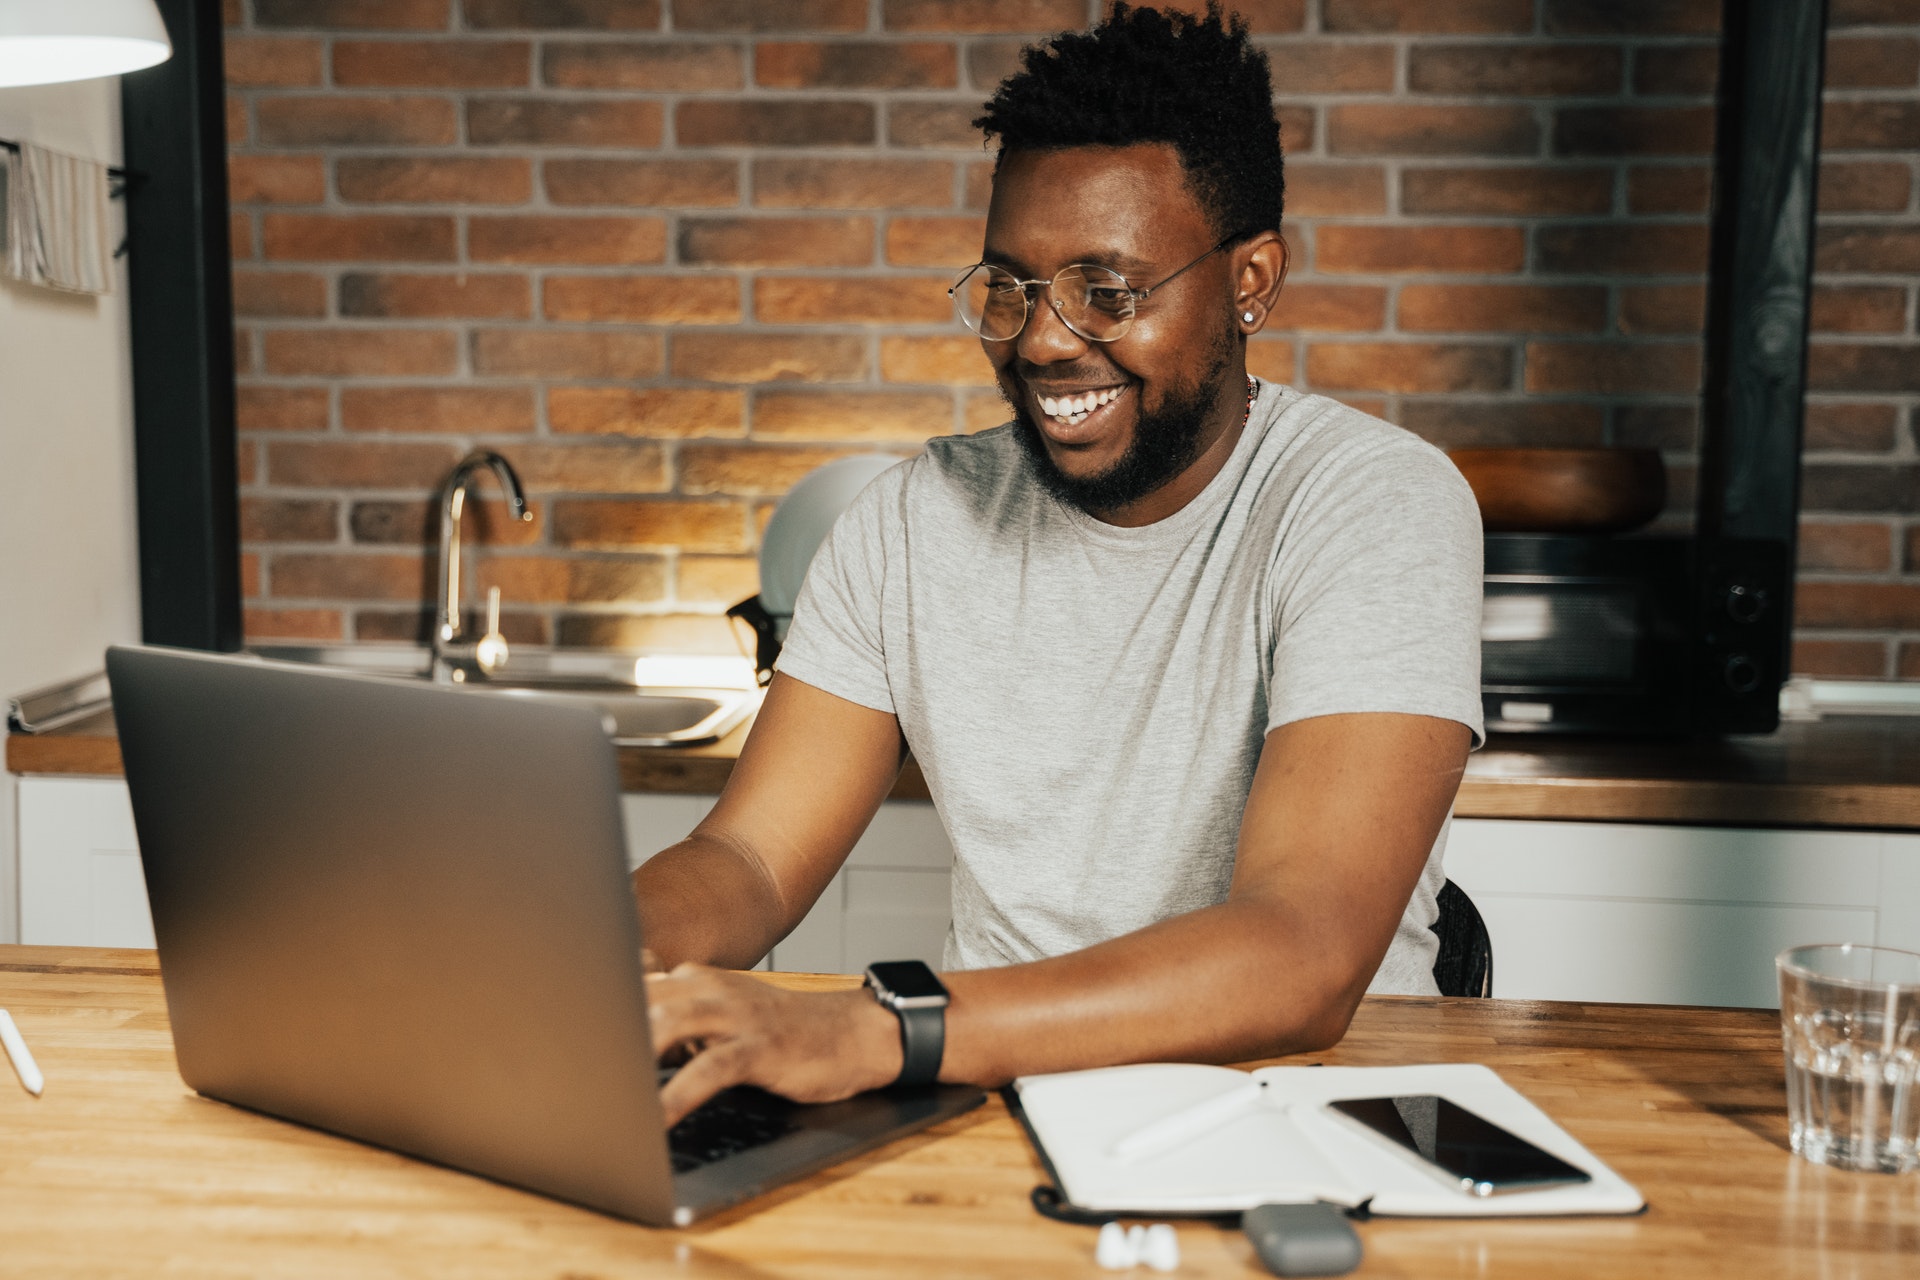 Homem sorrindo e mexendo no computador. Imagem ilustrativa do texto o que significa empreender.